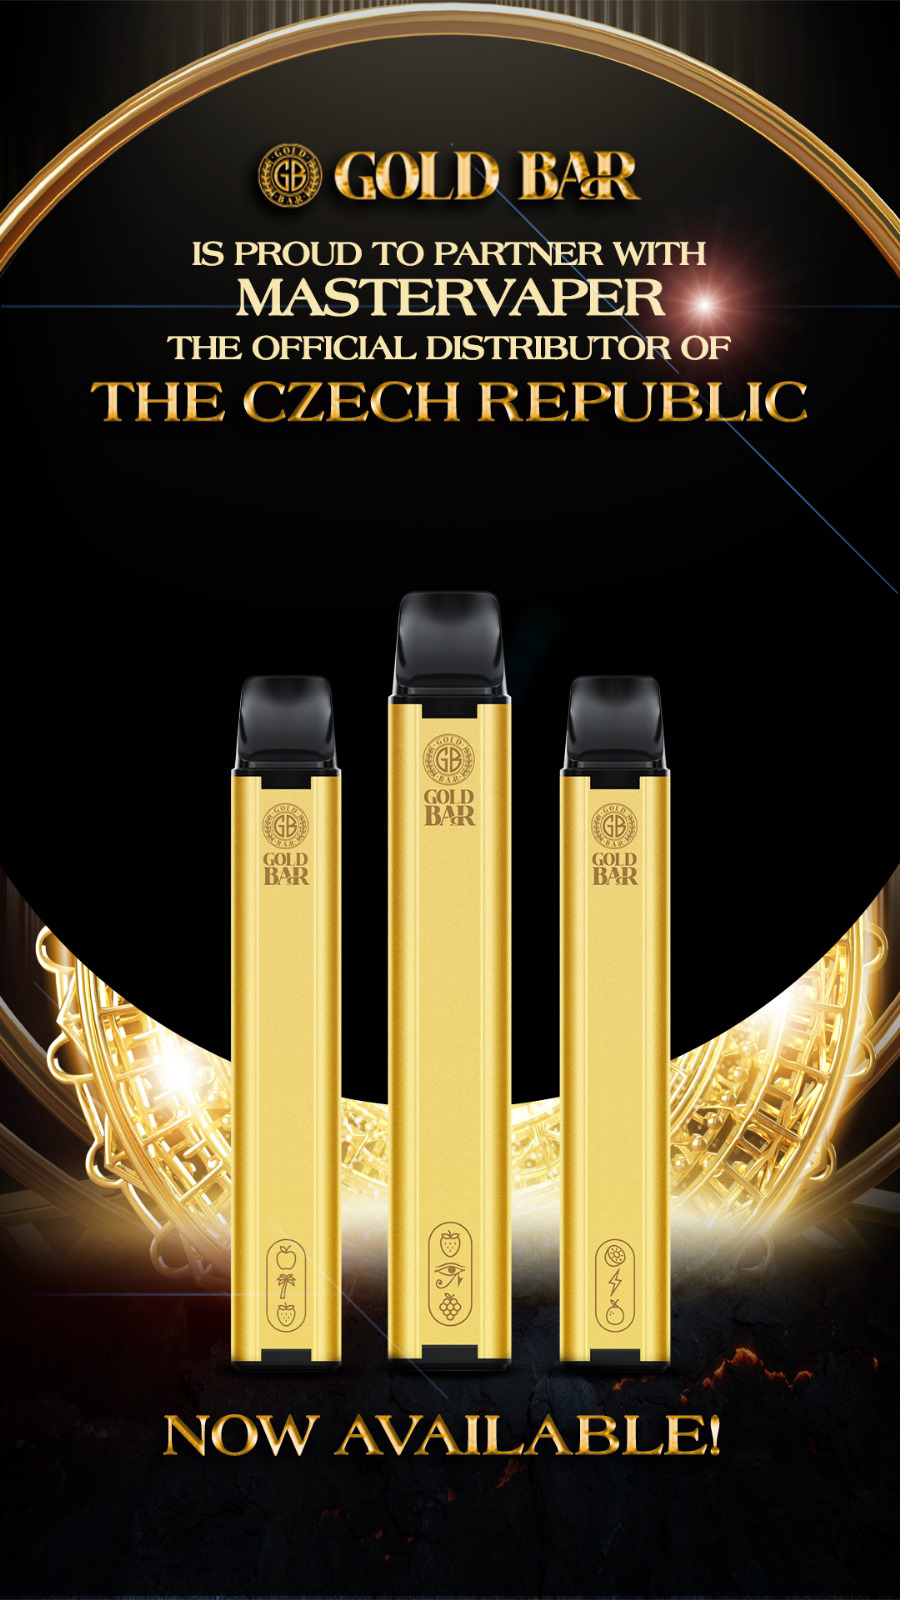 GOLD BAR THE CZECH REPUBLIC